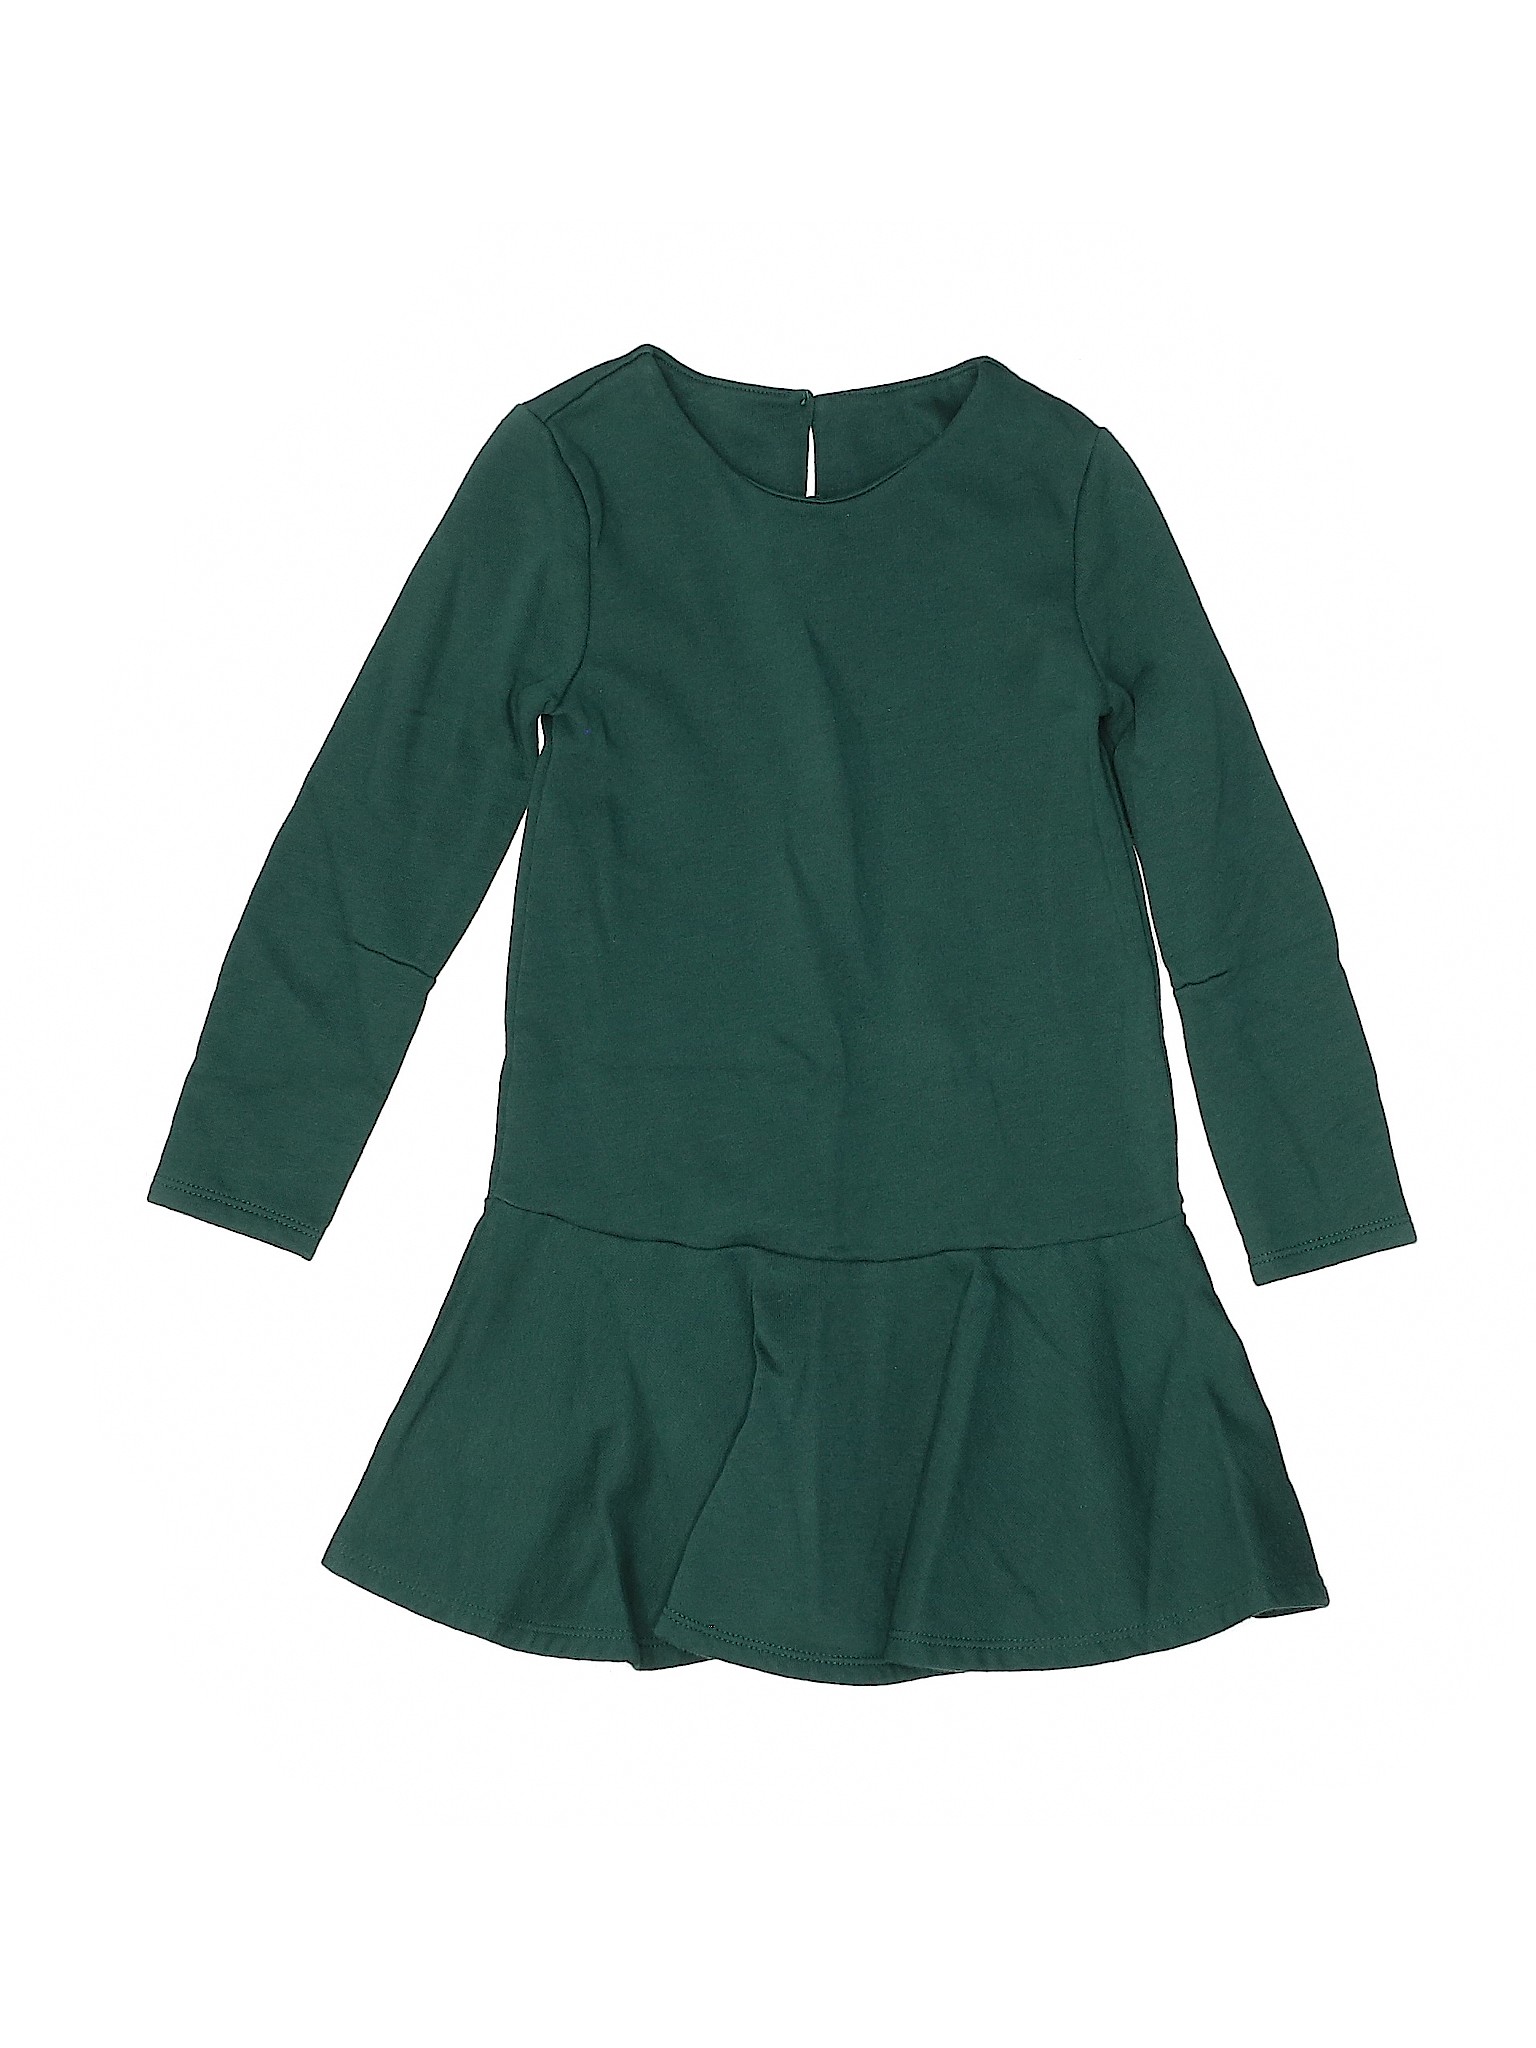 Old Navy Girls Green Dress 5T | eBay